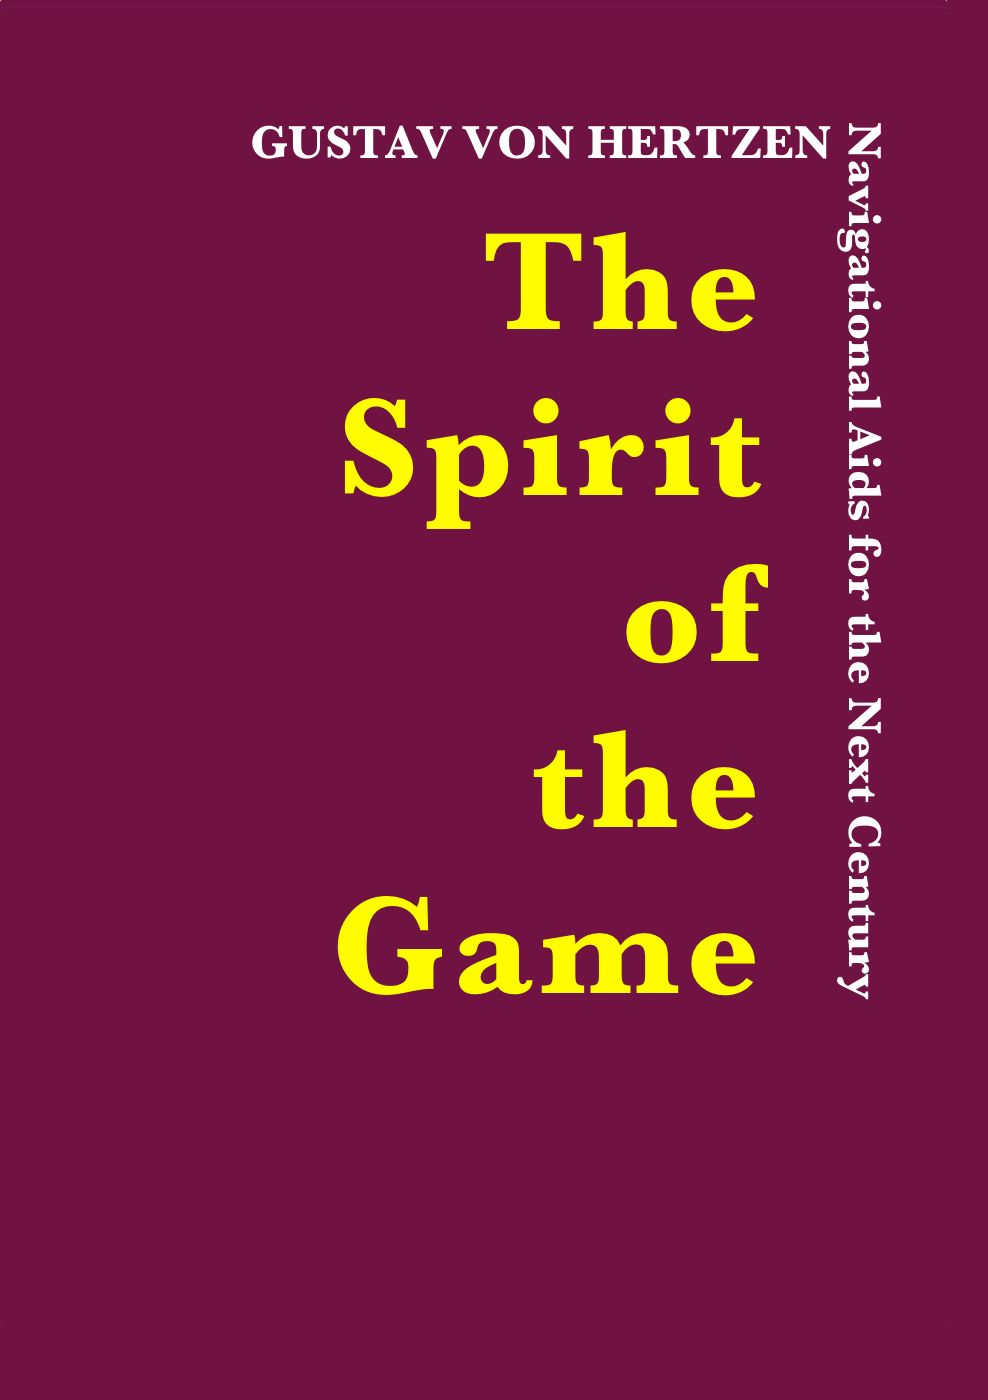 The Spirit of the Game, e-bog af Gustav von Hertzen